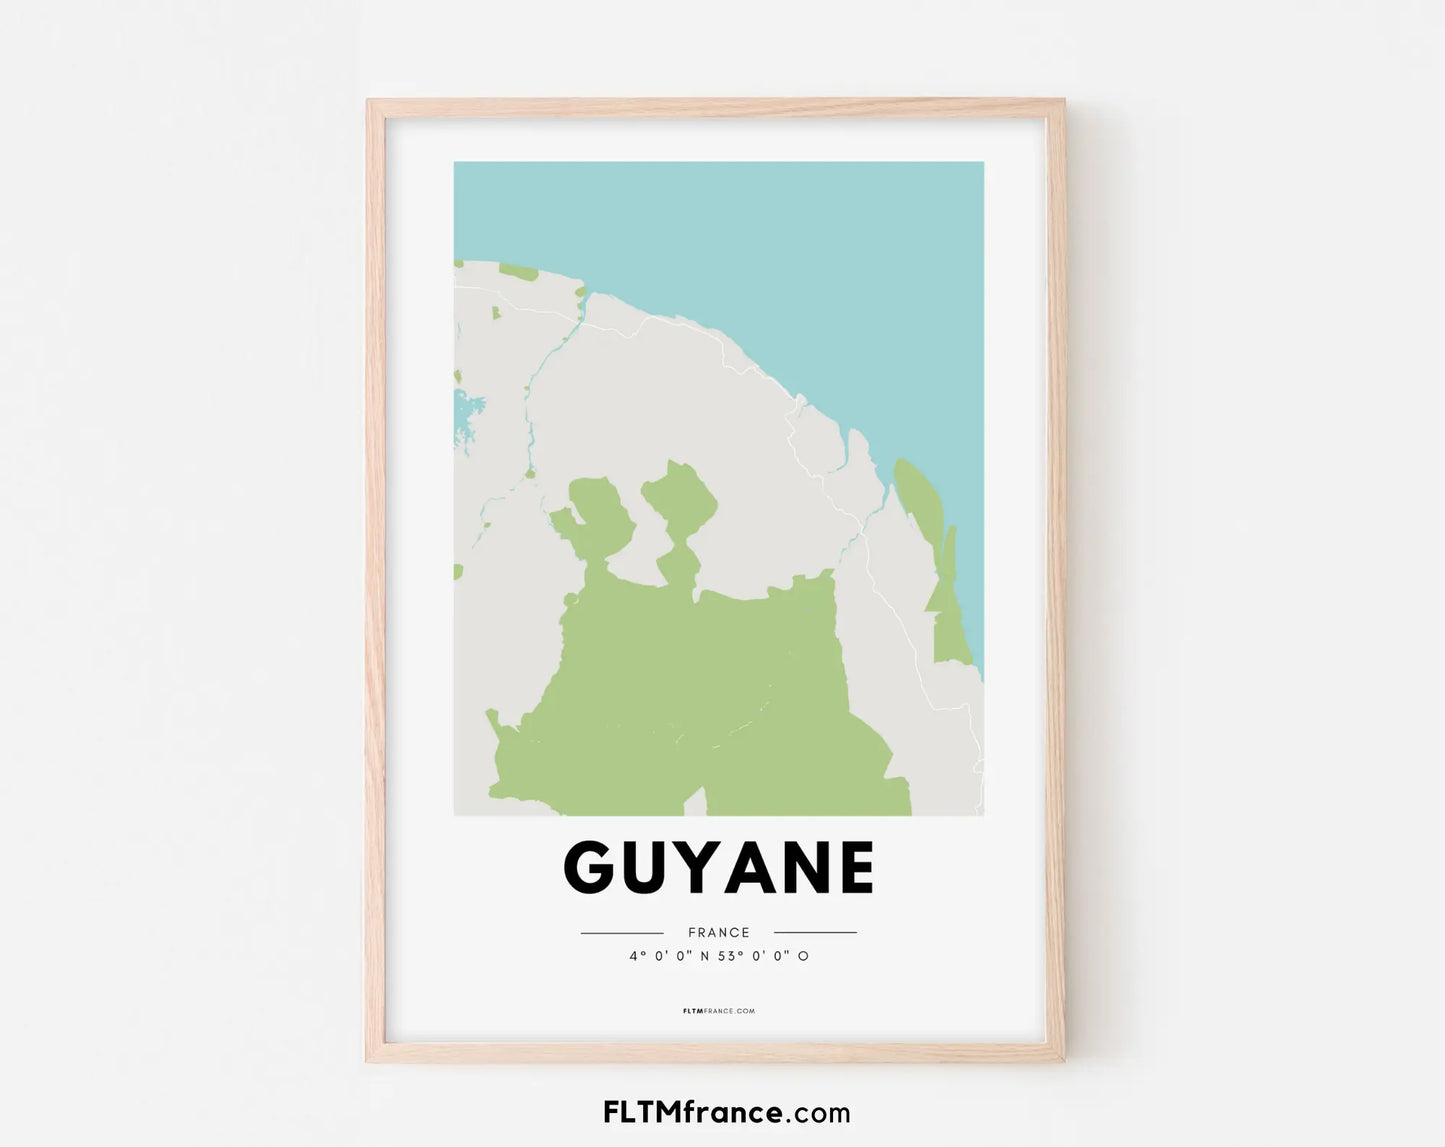 Affiche carte Guyane - Villes de France FLTMfrance